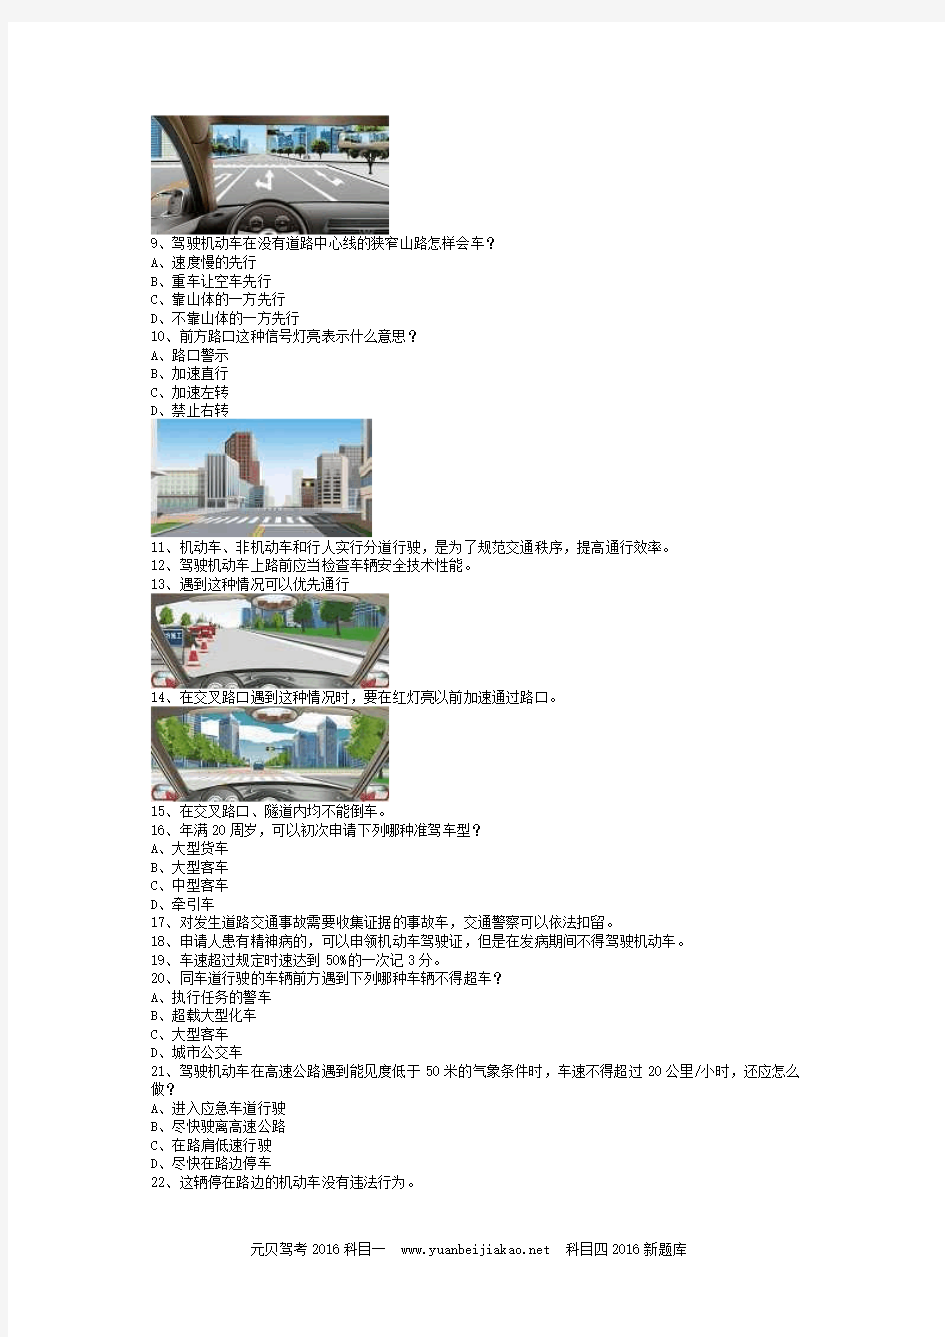 2013名汇县交规模拟考试C2车型答题技巧